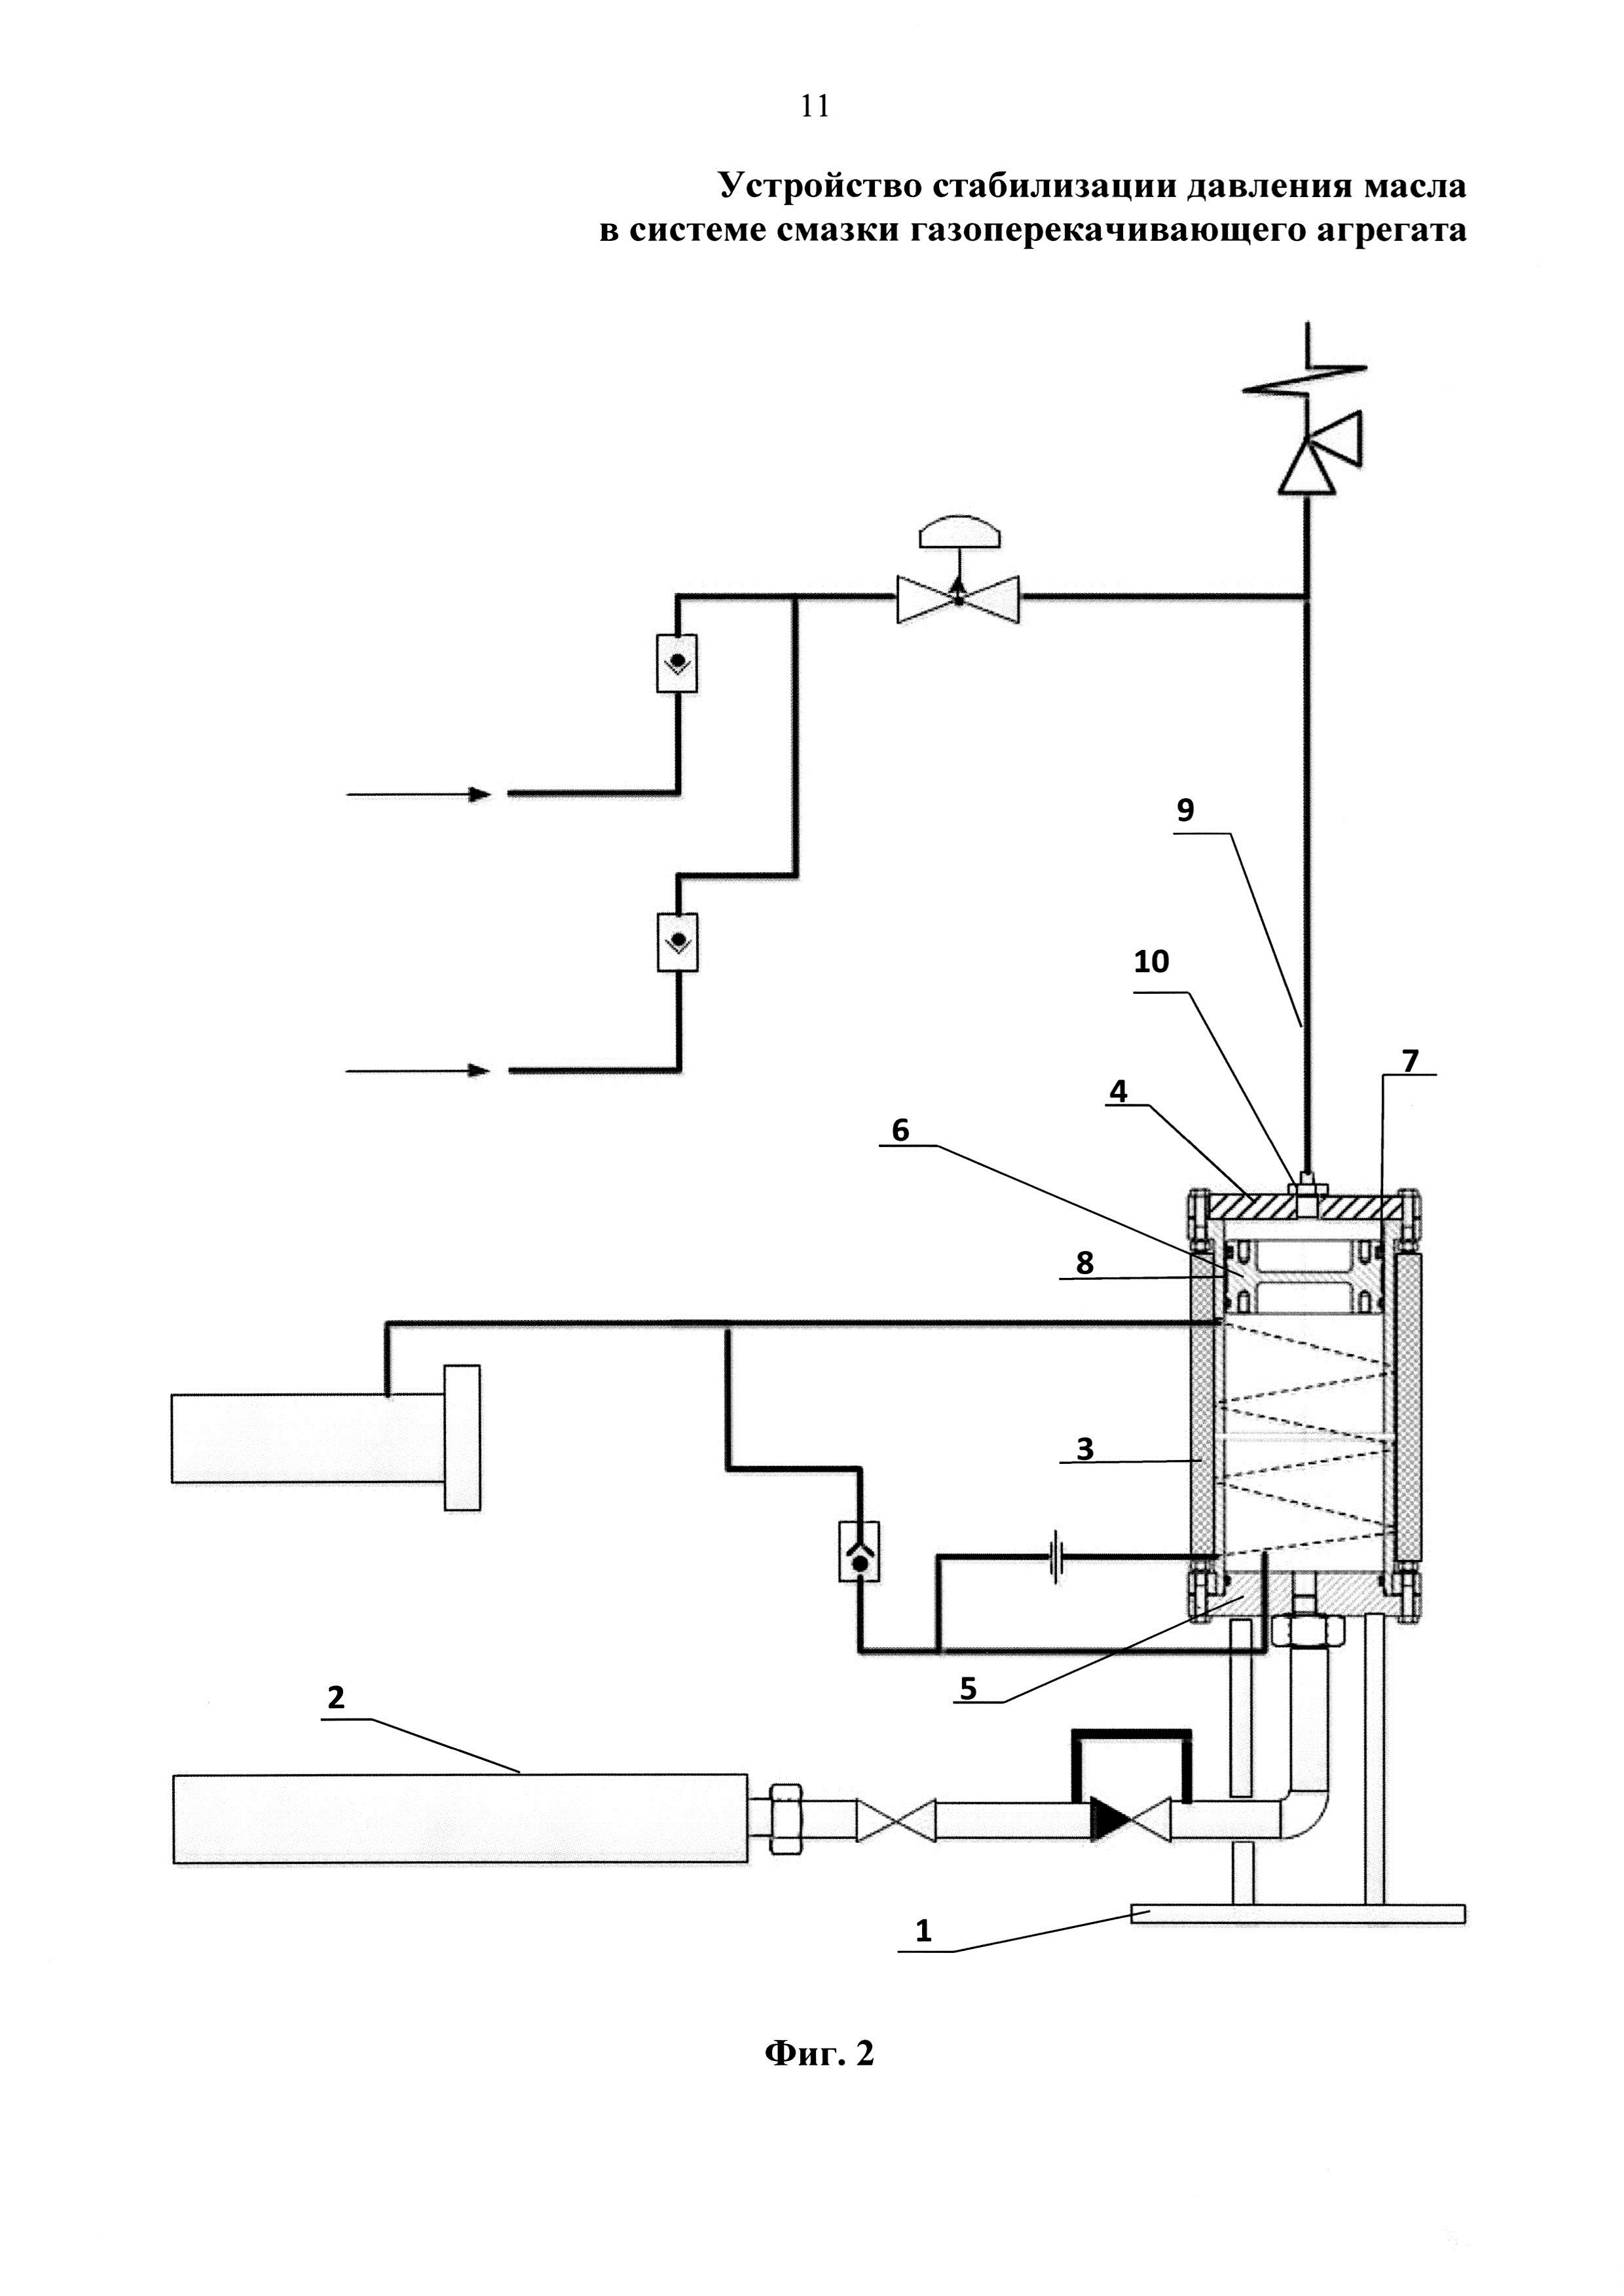 Устройство стабилизации давления масла в системе смазки газоперекачивающего агрегата